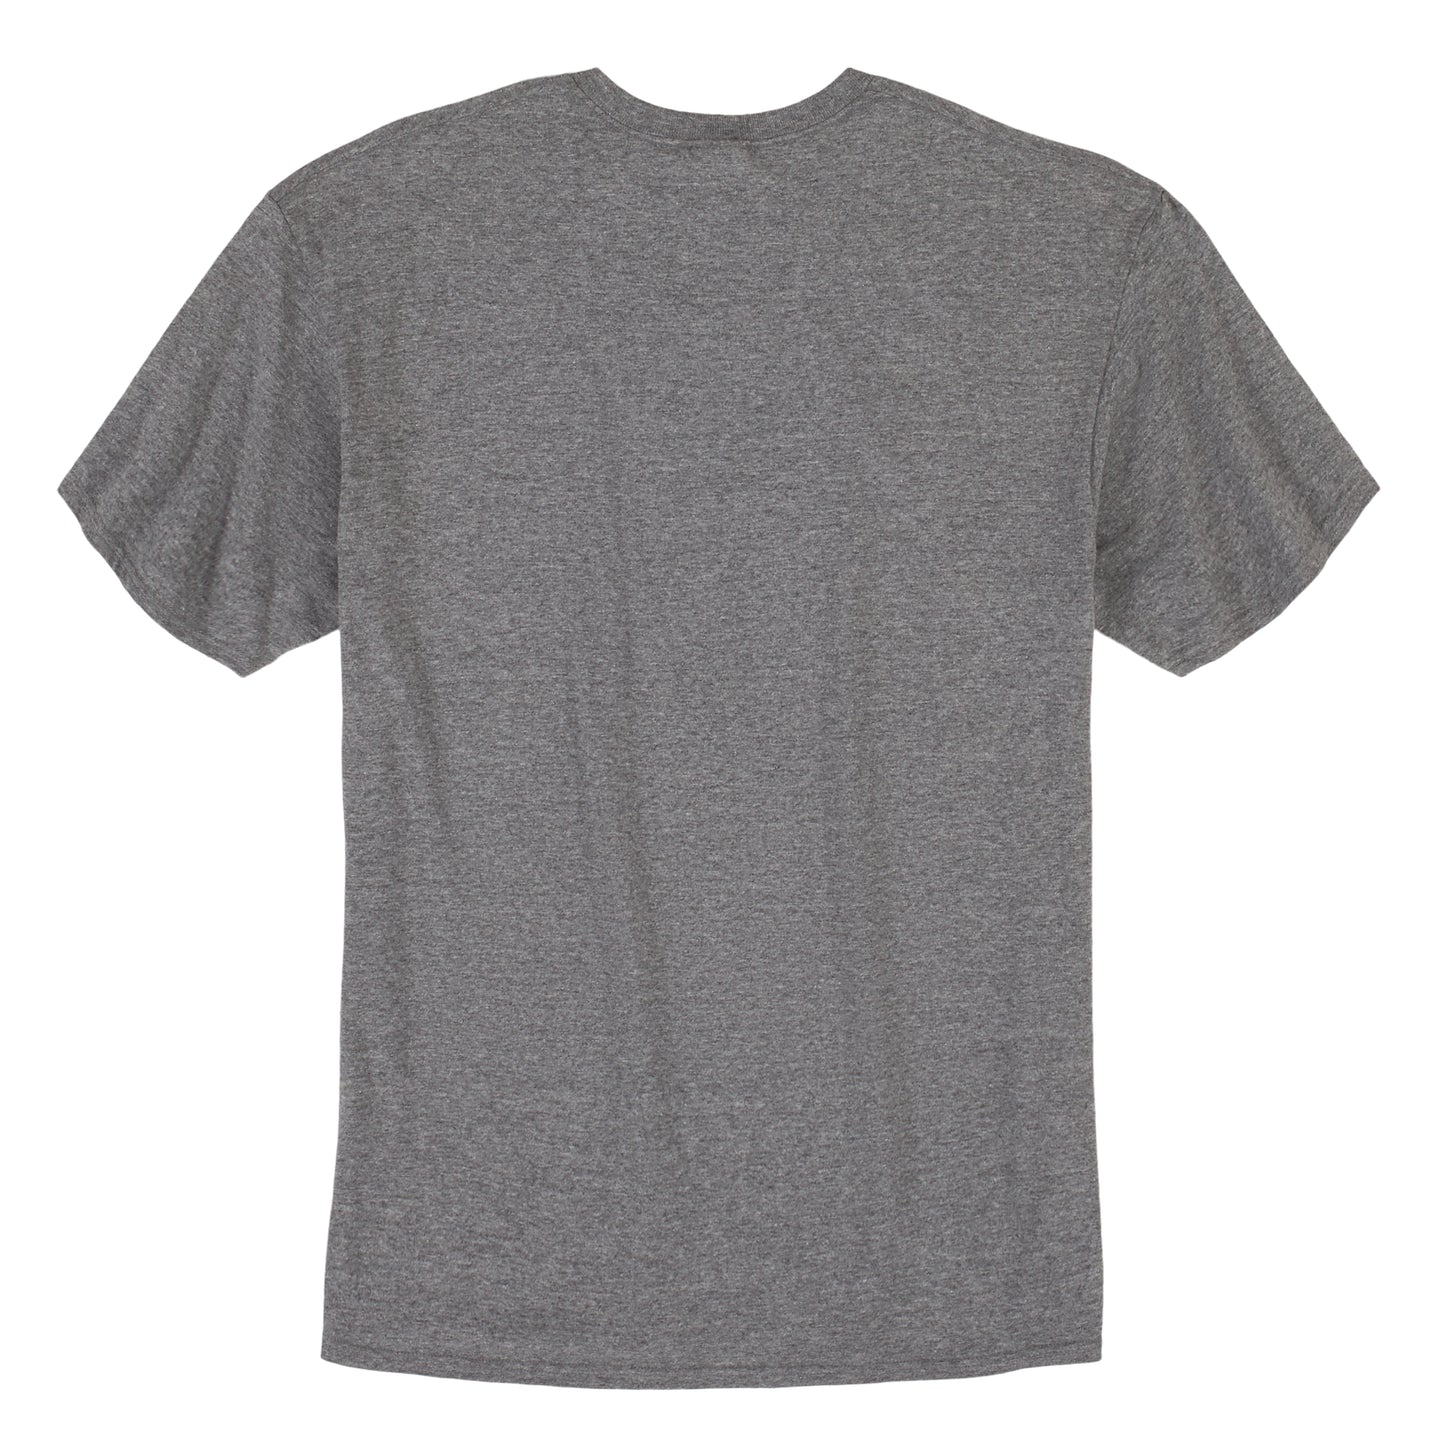 mq6163h Unisex Short Sleeved T-Shirt by Wrangler